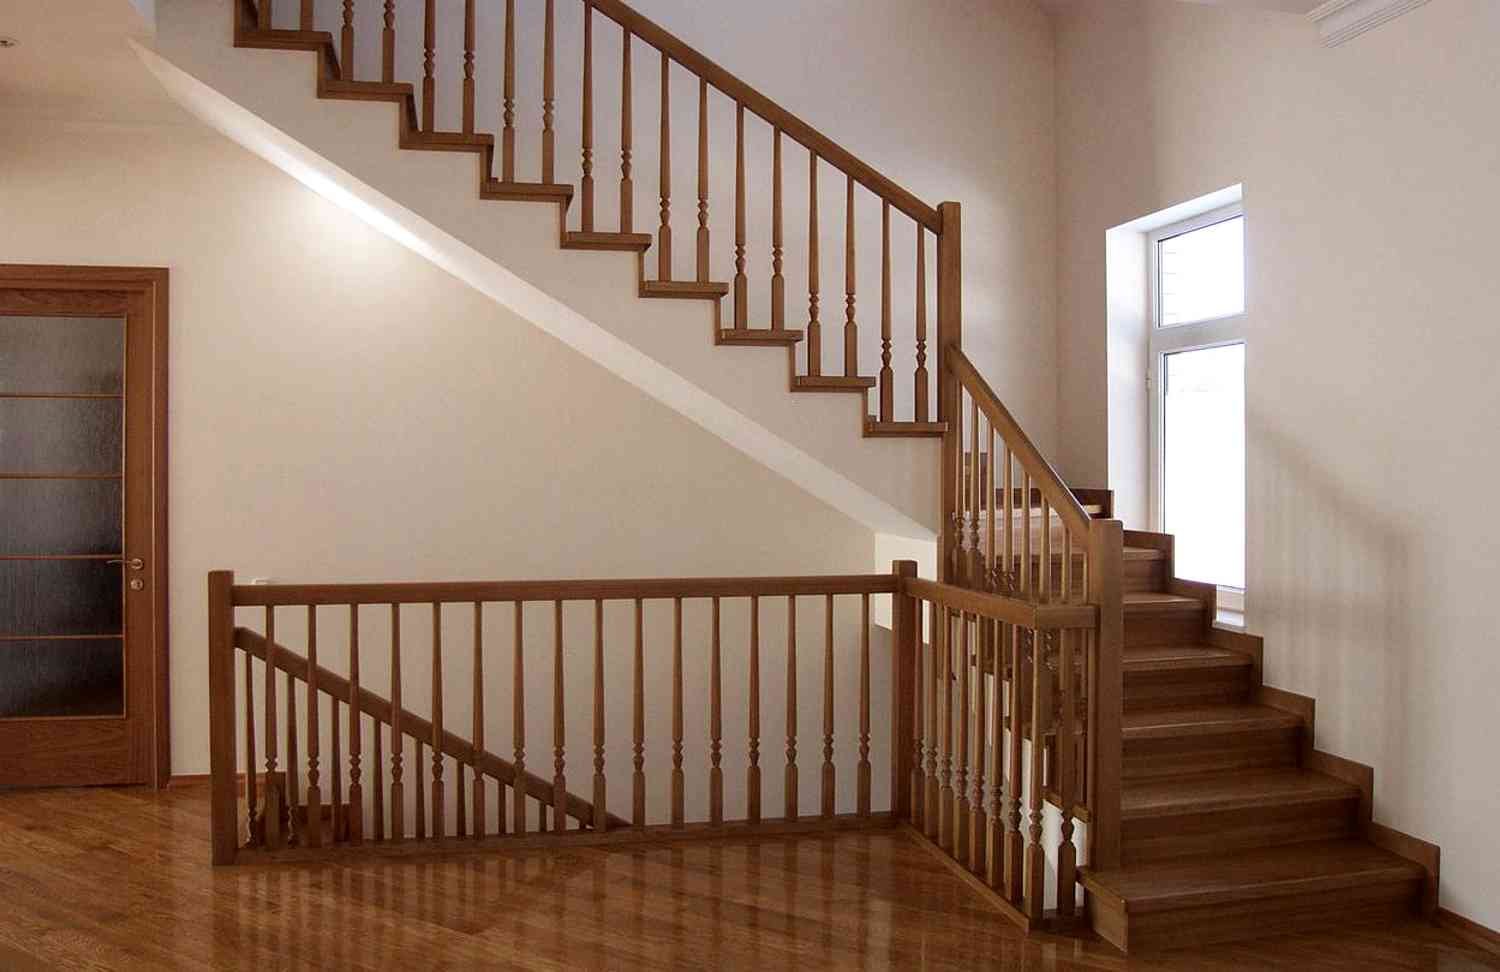 Второй этаж в школе. Лестница в частном доме. Лестница деревянная. Лестница межэтажная деревянная. Межэтажные лестницы в частном доме деревянные.